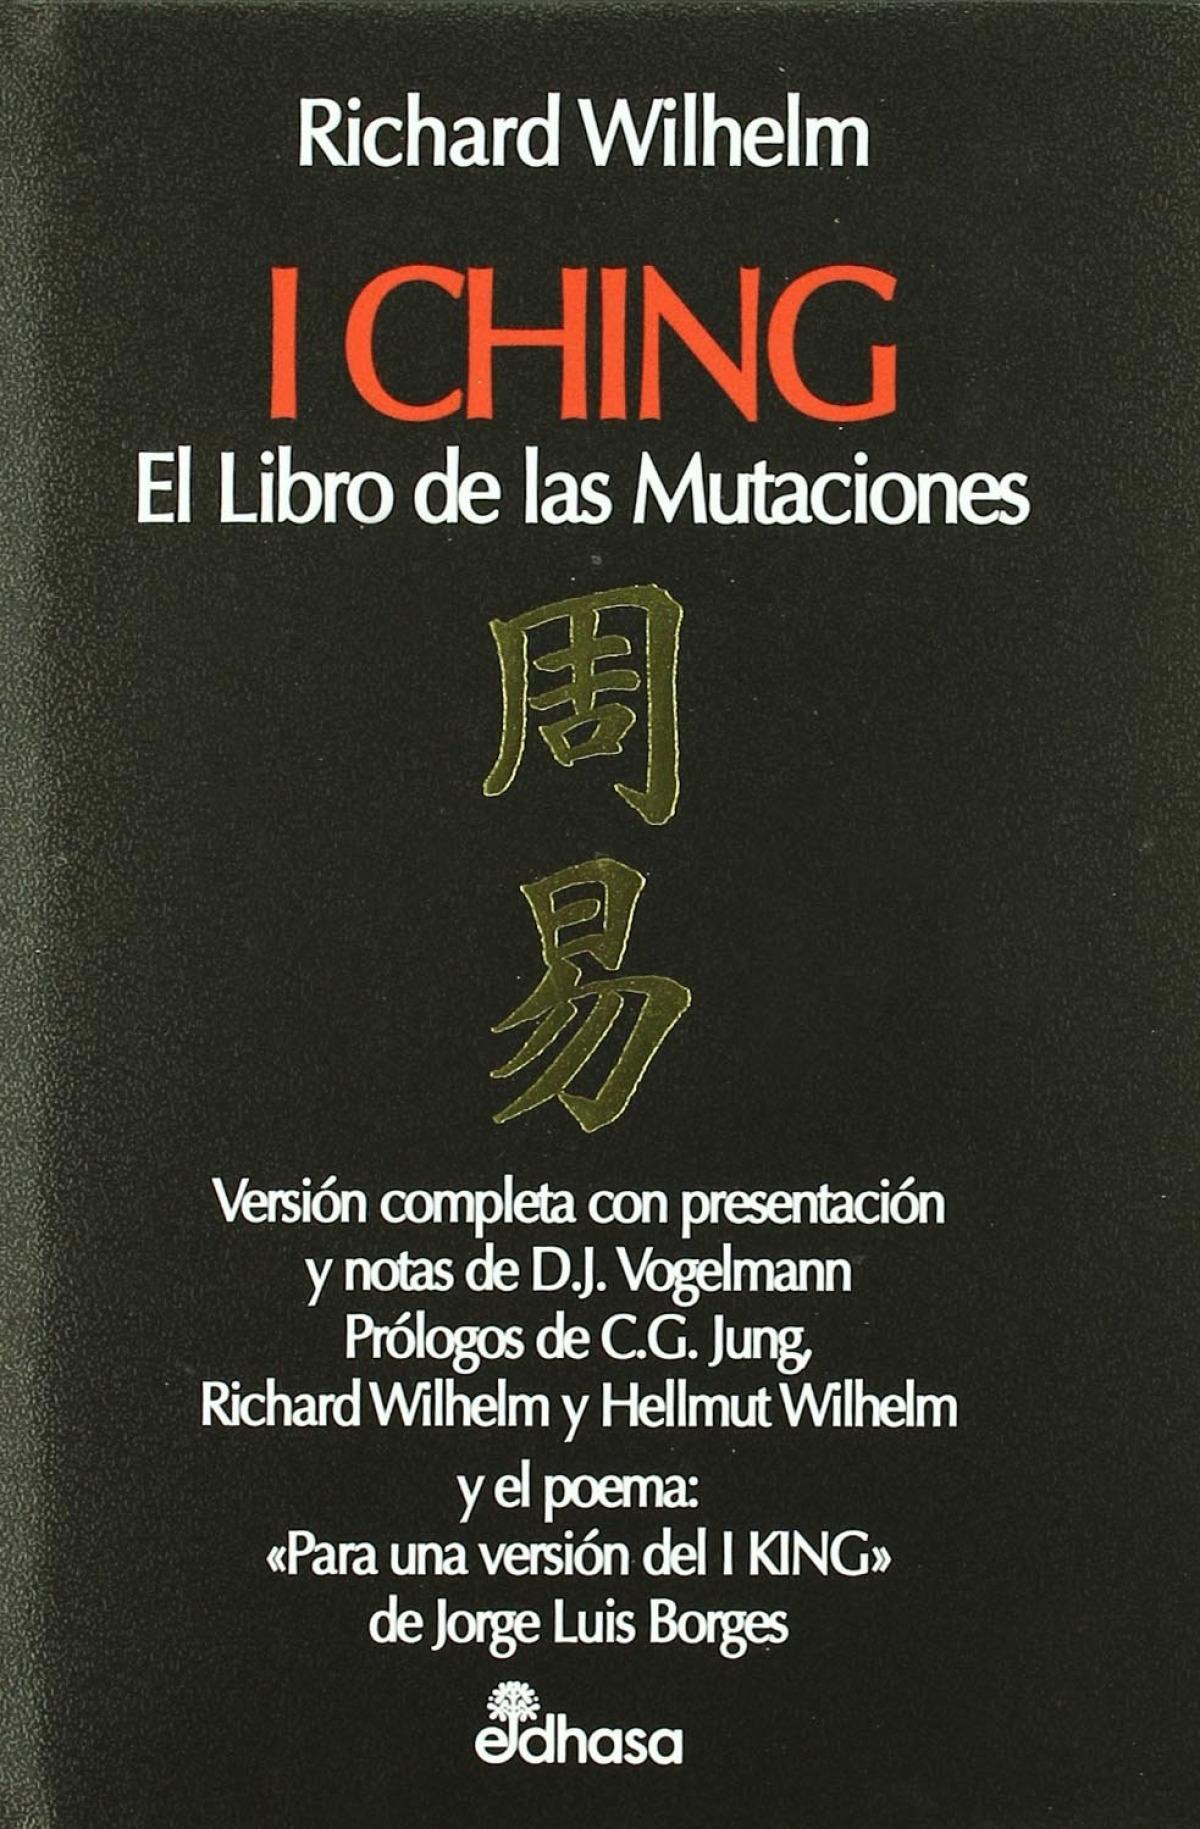 I Ching "El Libro de las Mutaciones"